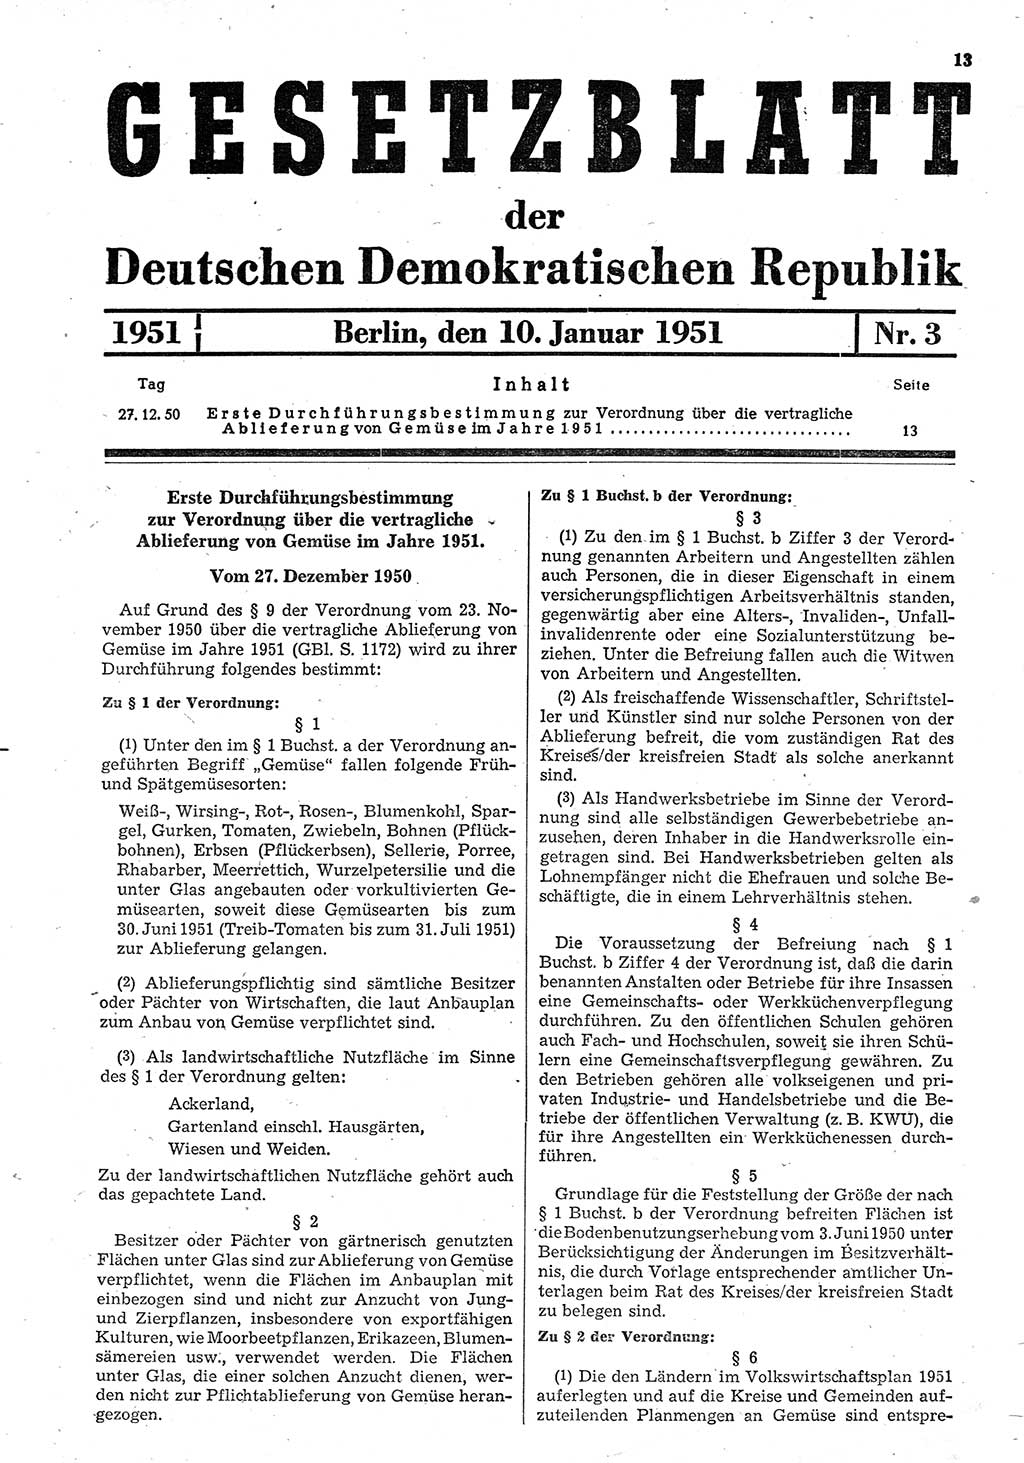 Gesetzblatt (GBl.) der Deutschen Demokratischen Republik (DDR) 1951, Seite 13 (GBl. DDR 1951, S. 13)